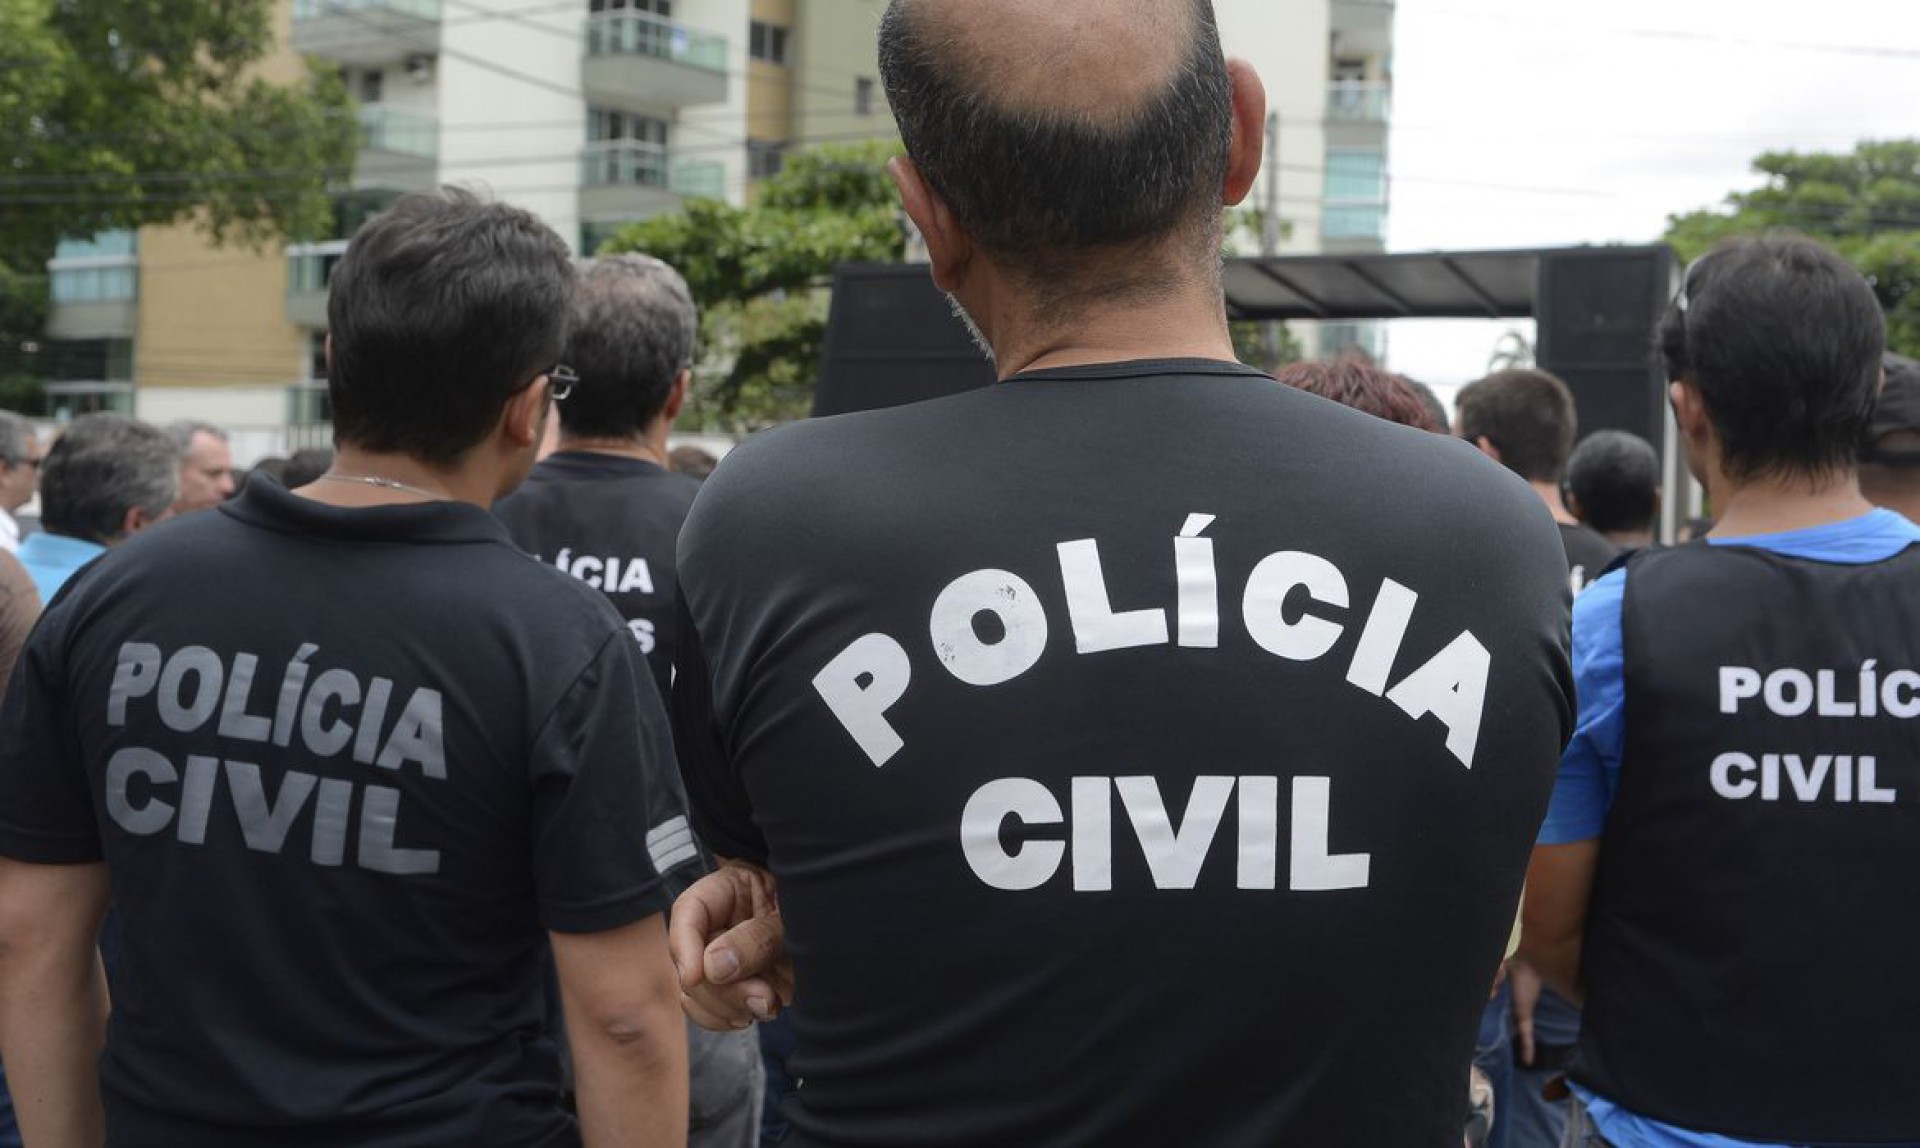 Polícia Civil em ação (Foto: Tânia Rêgo/Agência Brasil)